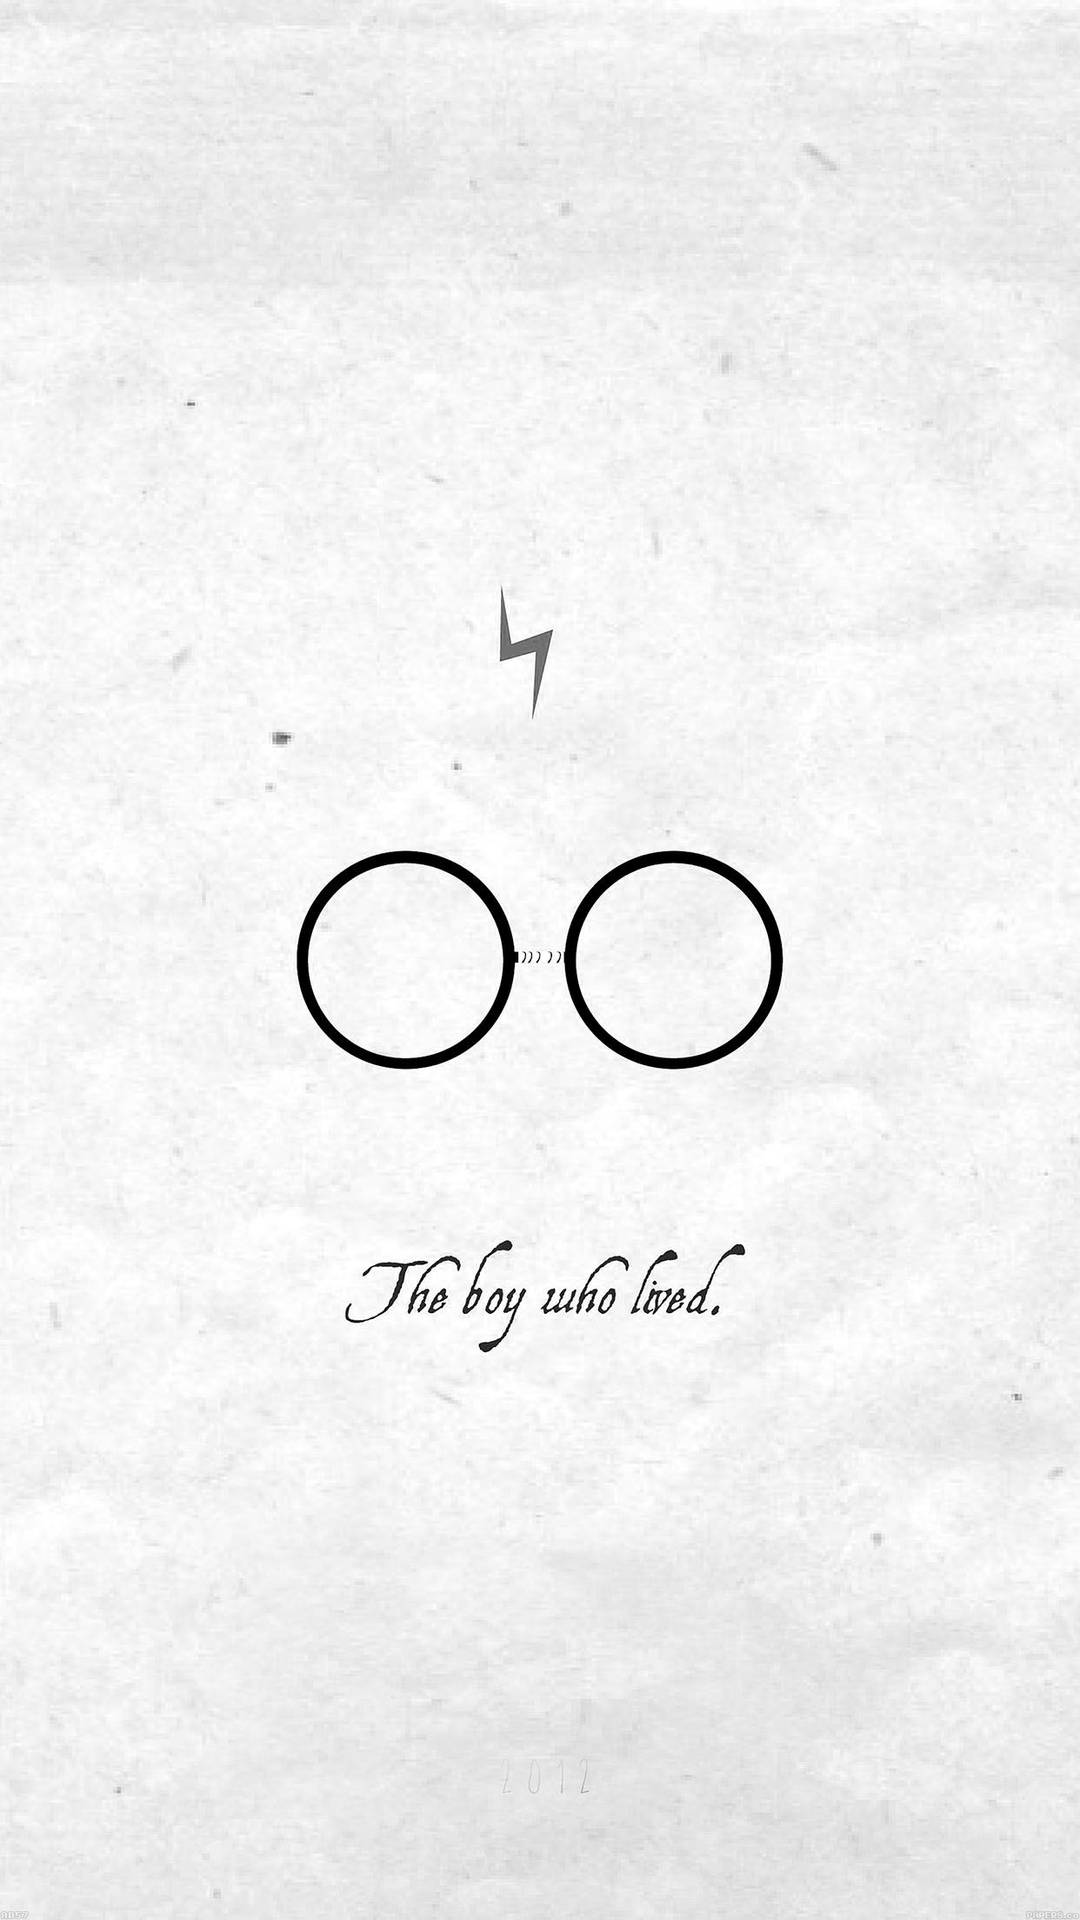 Pojkensom Överlevde - Harry Potter Wallpaper